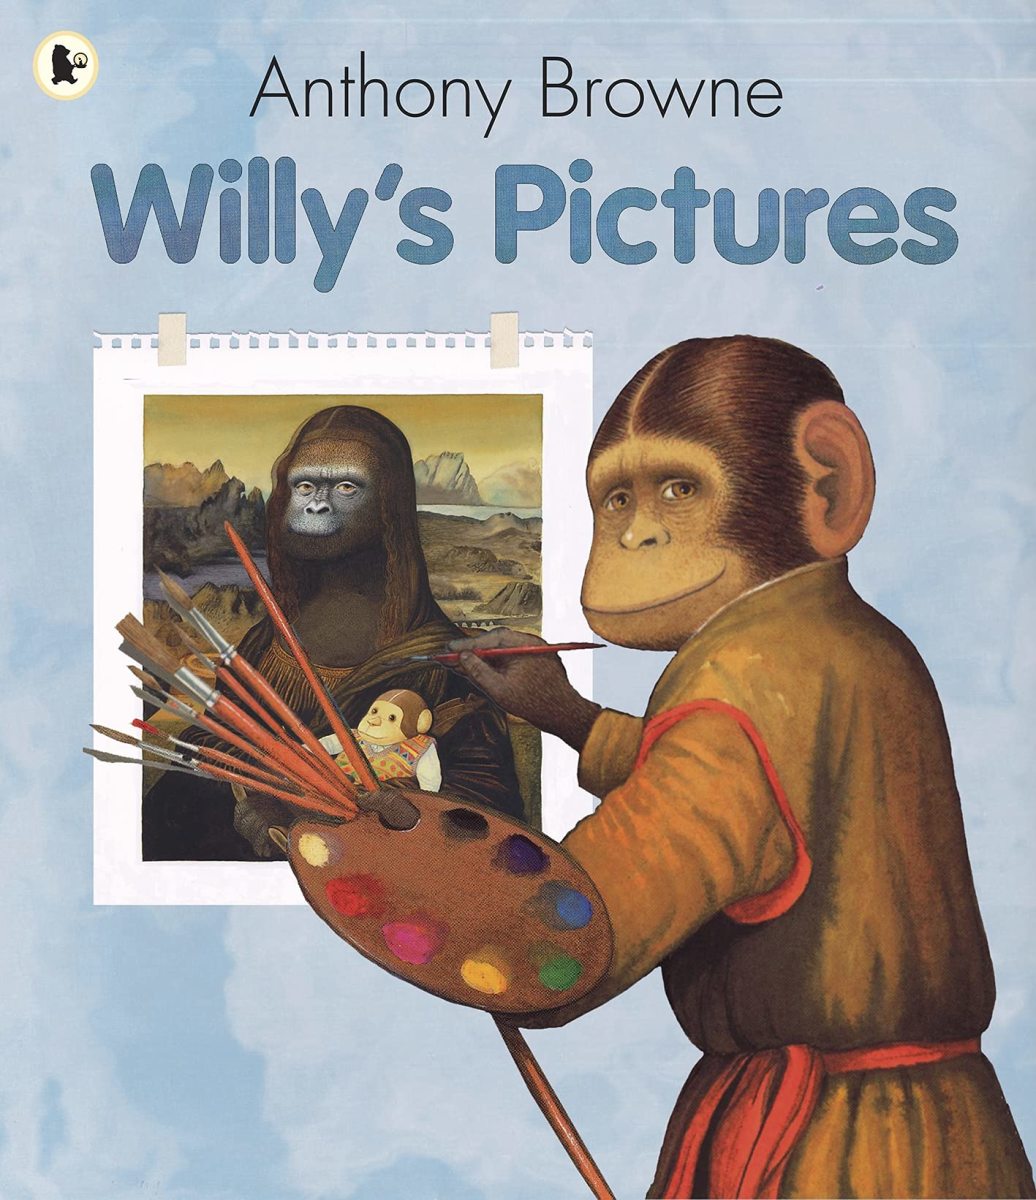 安东尼·布朗的《威利的图画》